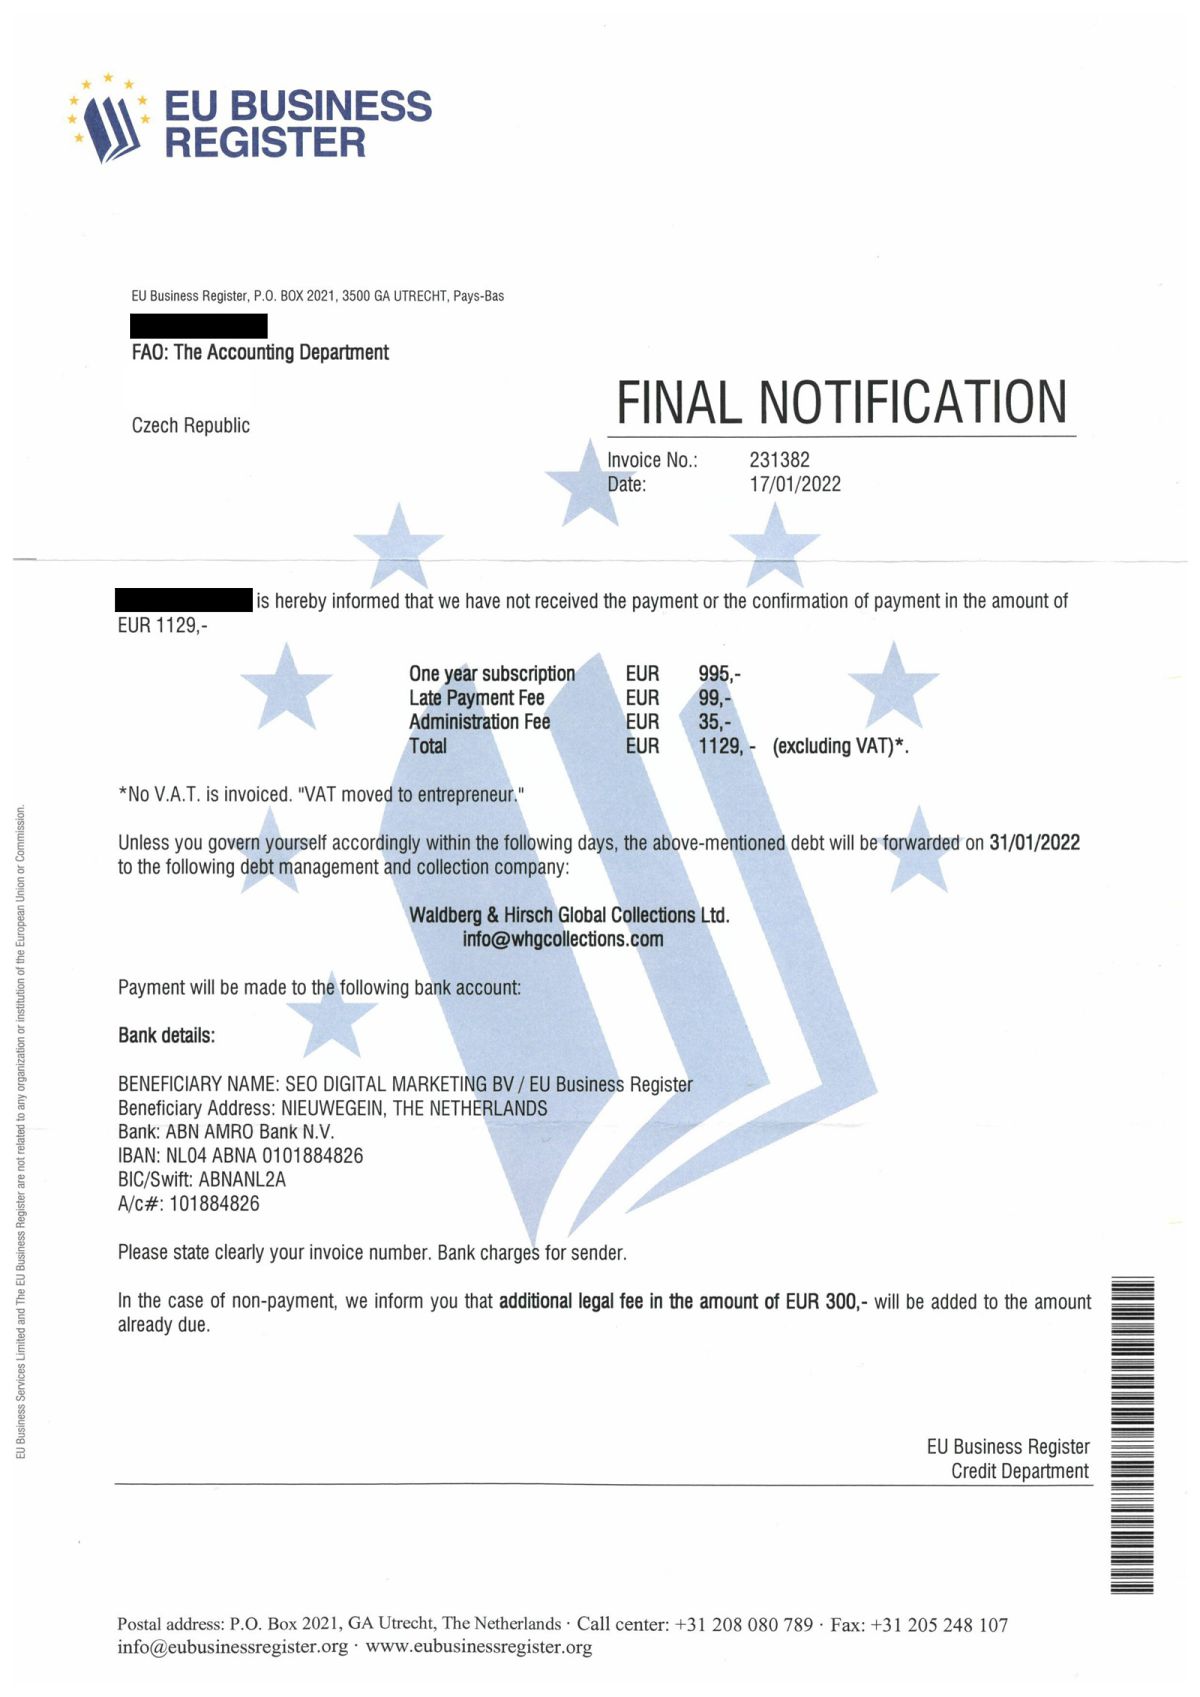 “EU Business Register” spam: mi történik, ha nem fizetsz?